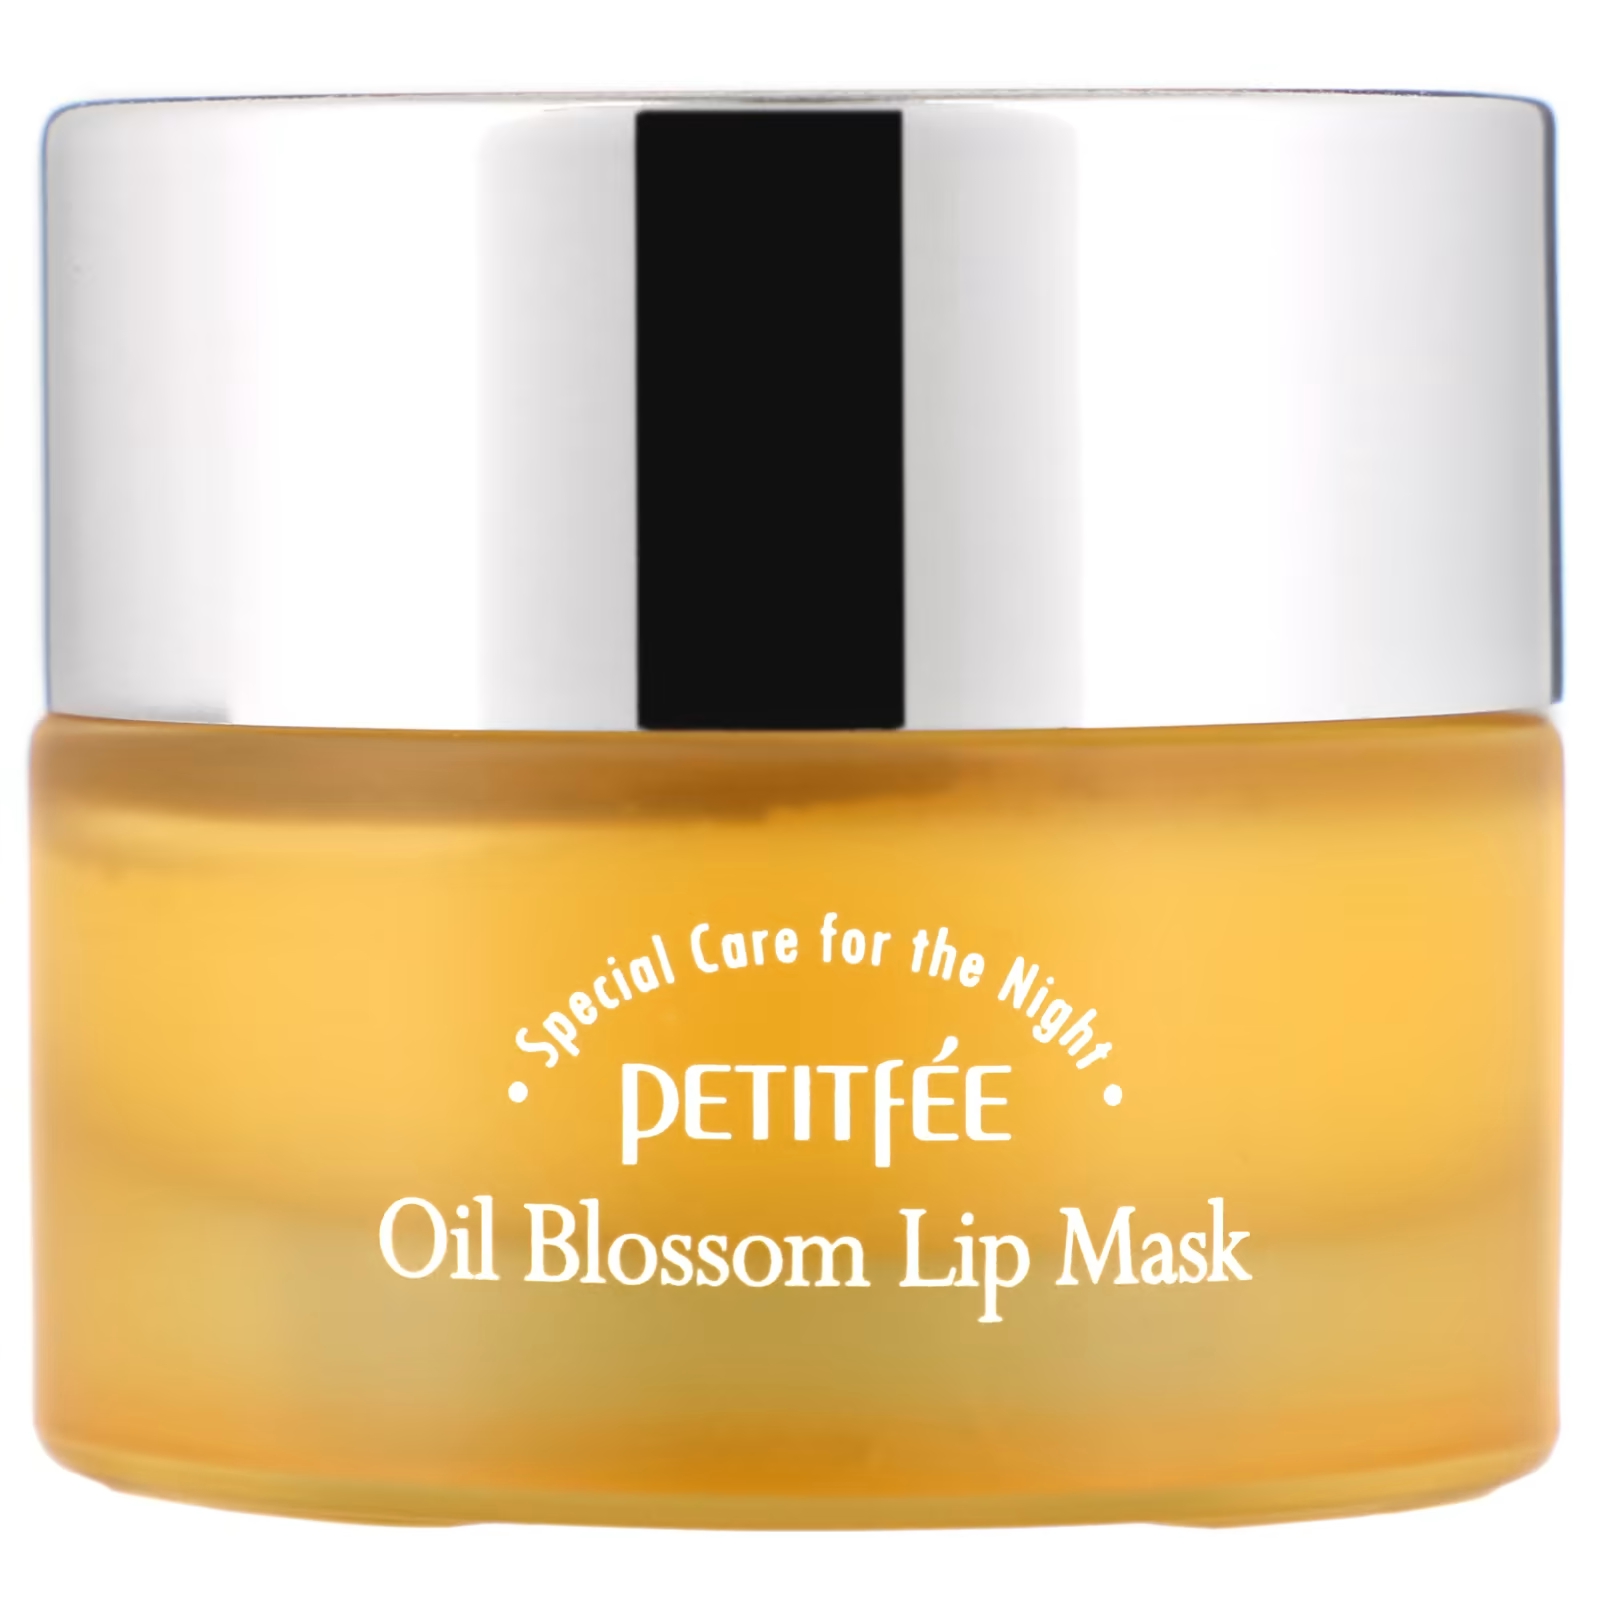 Маска для губ Petitfee Oil Blossom с облепиховым маслом, 15 г маска для губ petitfee oil blossom с облепиховым маслом 15 г